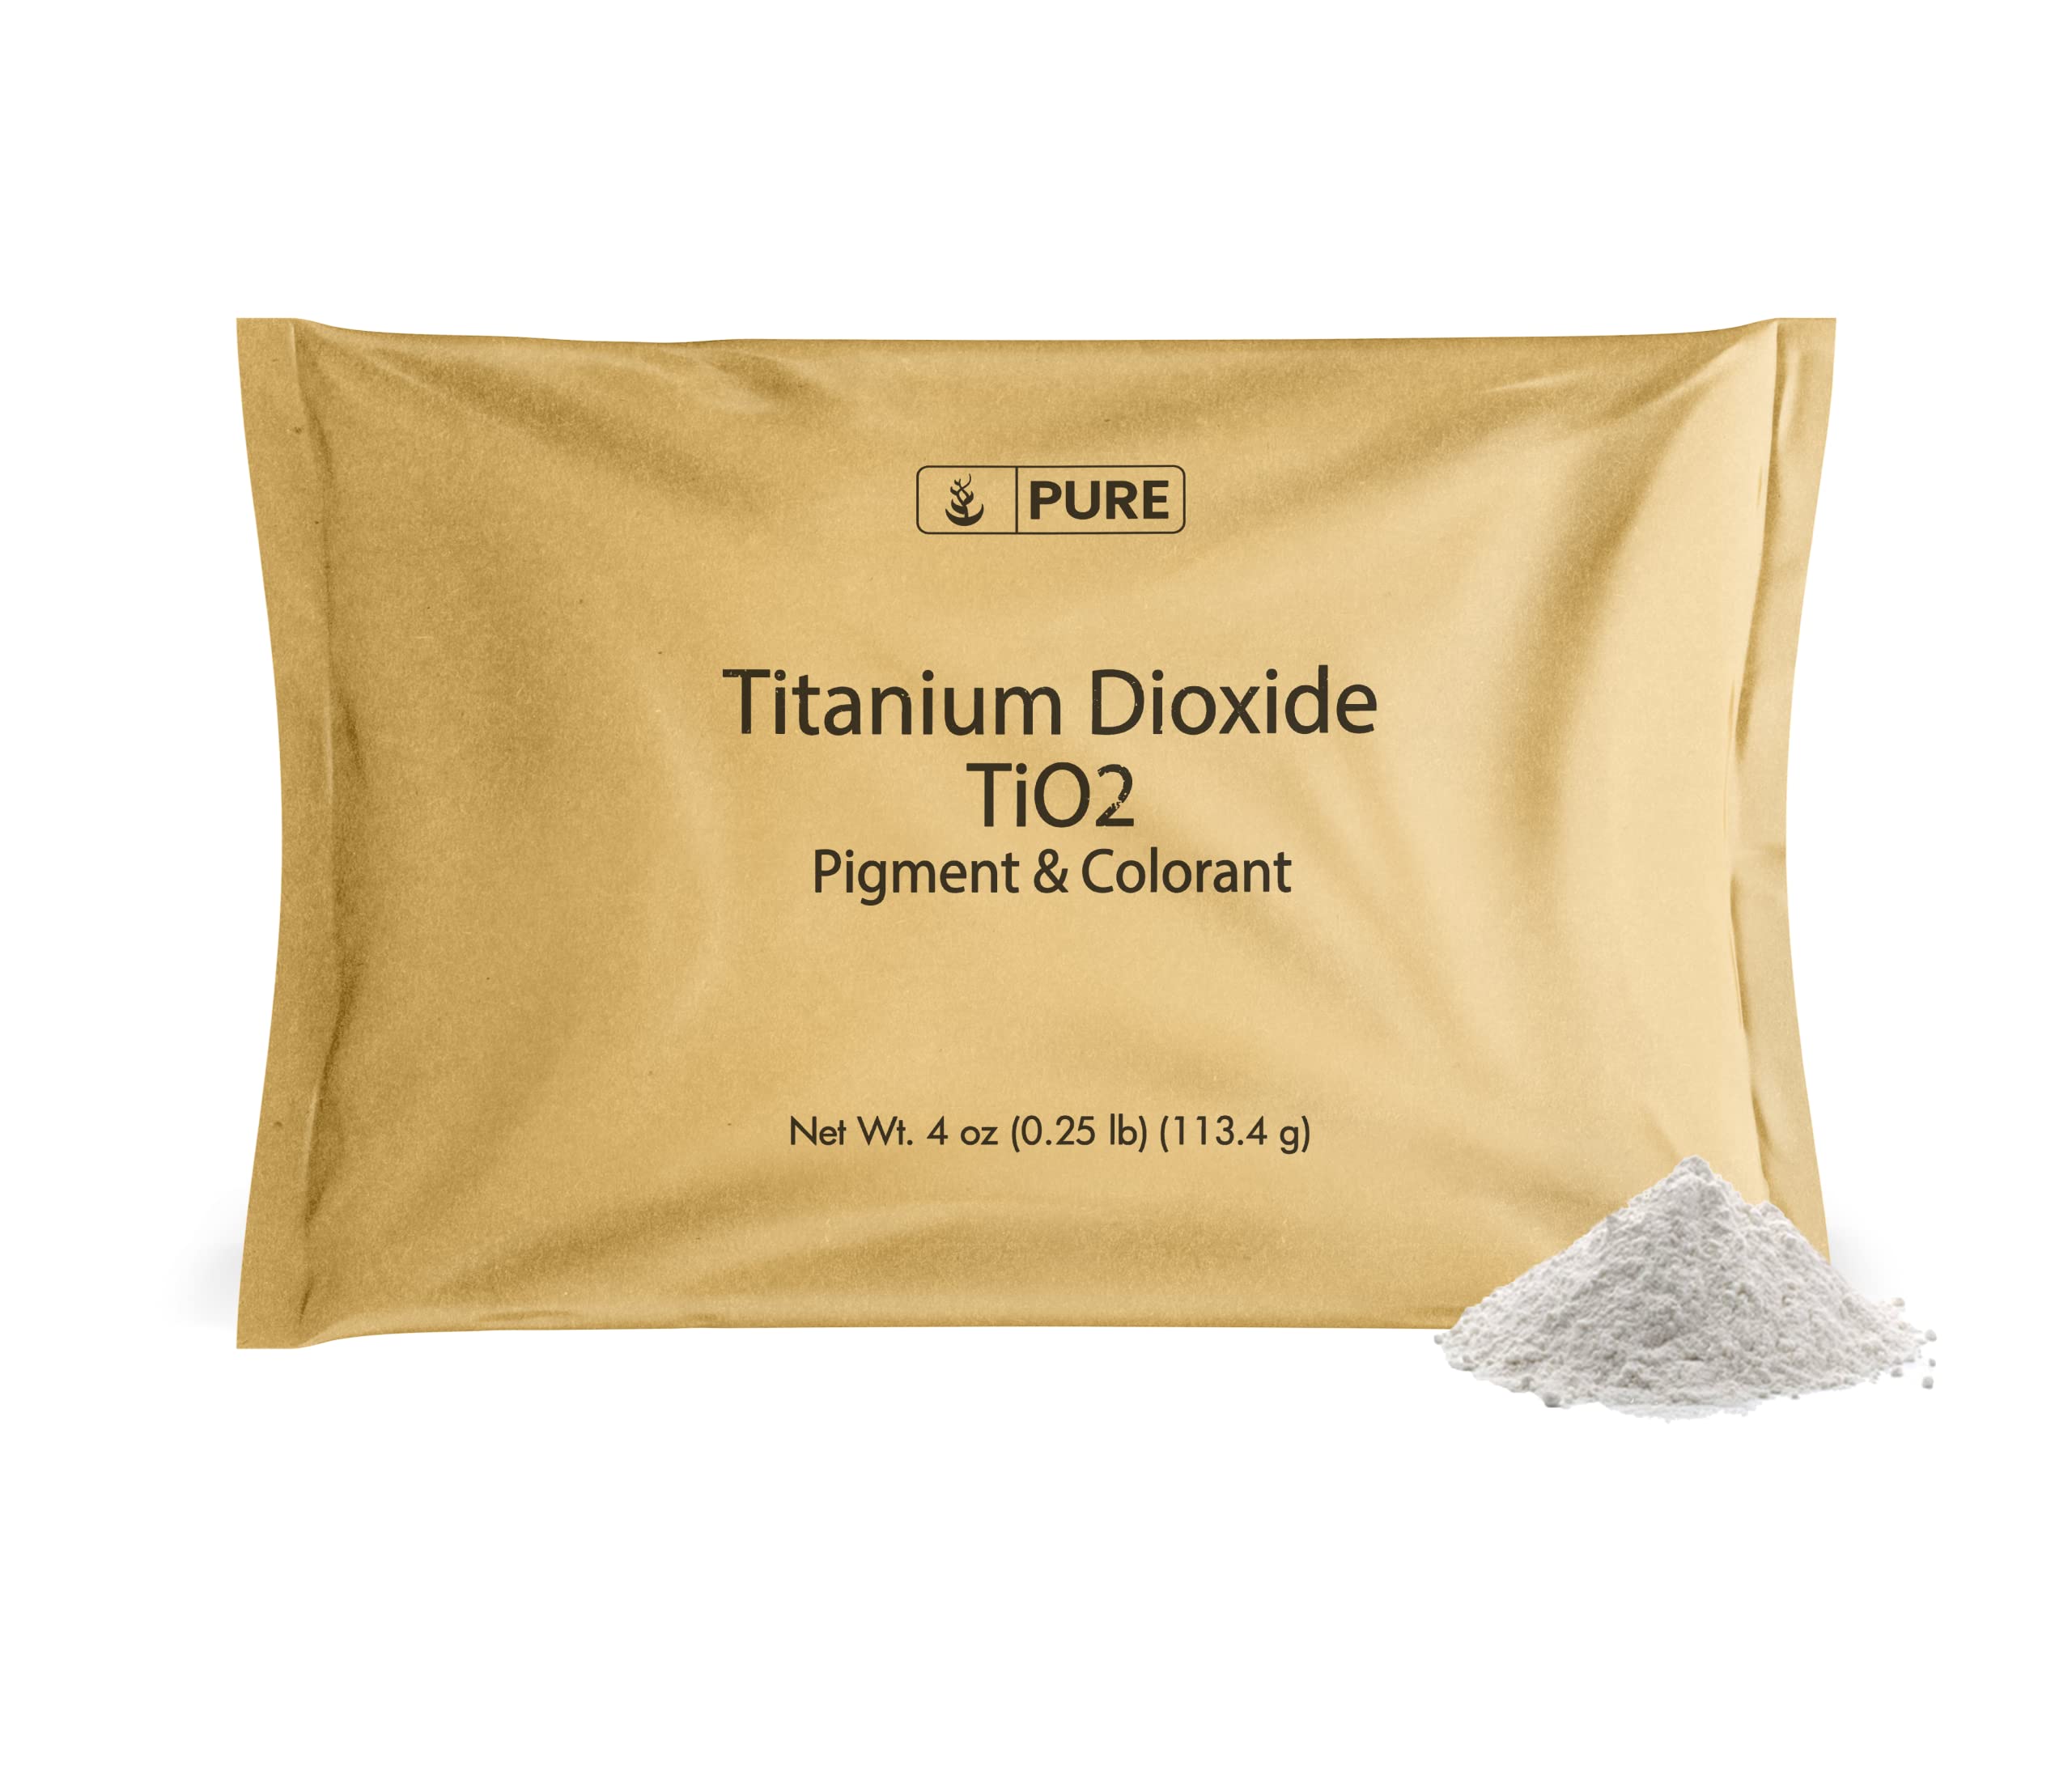 Pure Original Ingredients Titanium Dioxide (4 oz) Naturally Occurring,  Pigment & Colorant